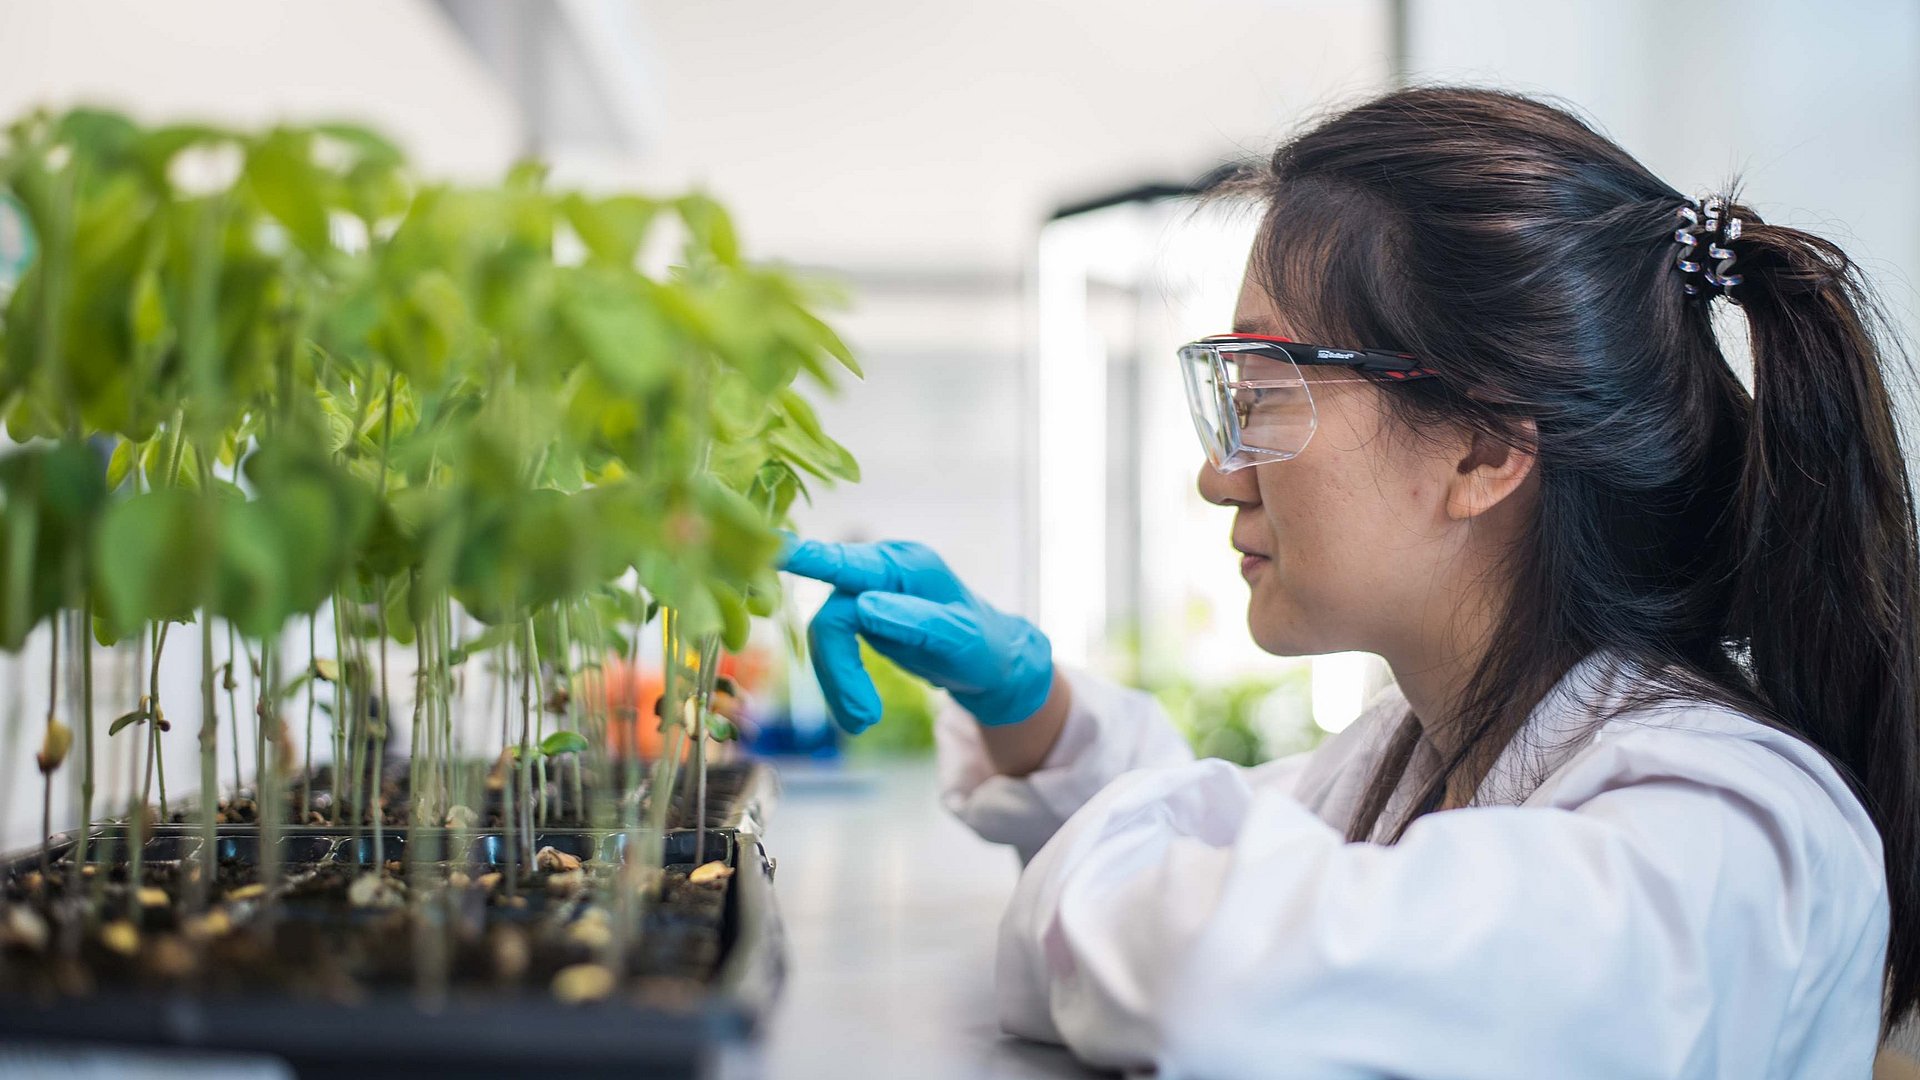 Forscherin im weißen Kittel zeigt auf Sojapflanzen